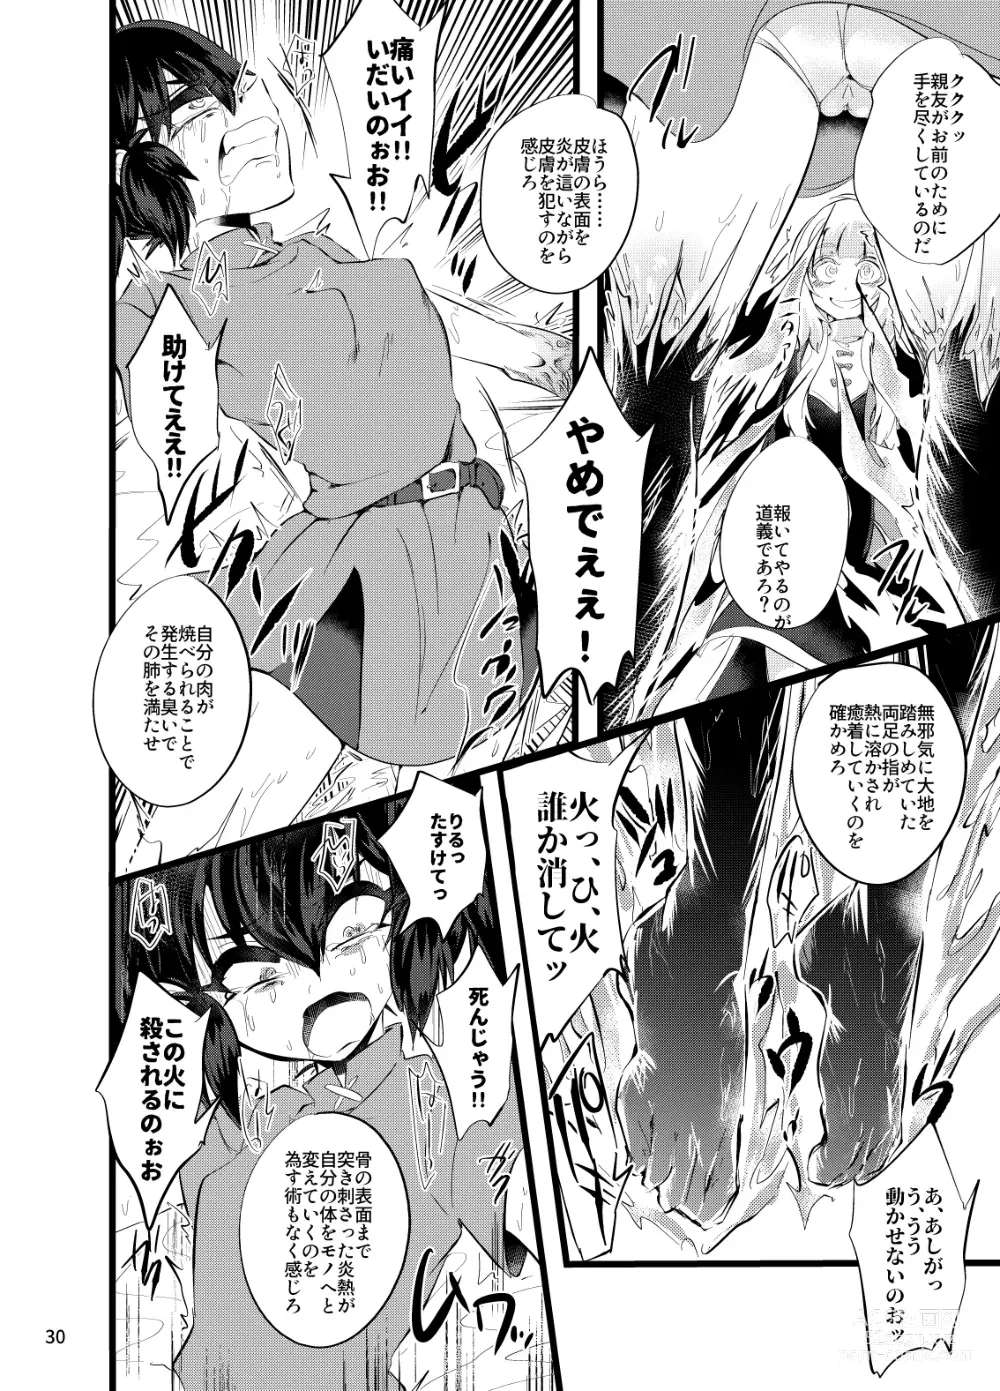 Page 31 of doujinshi Maen Yuugi